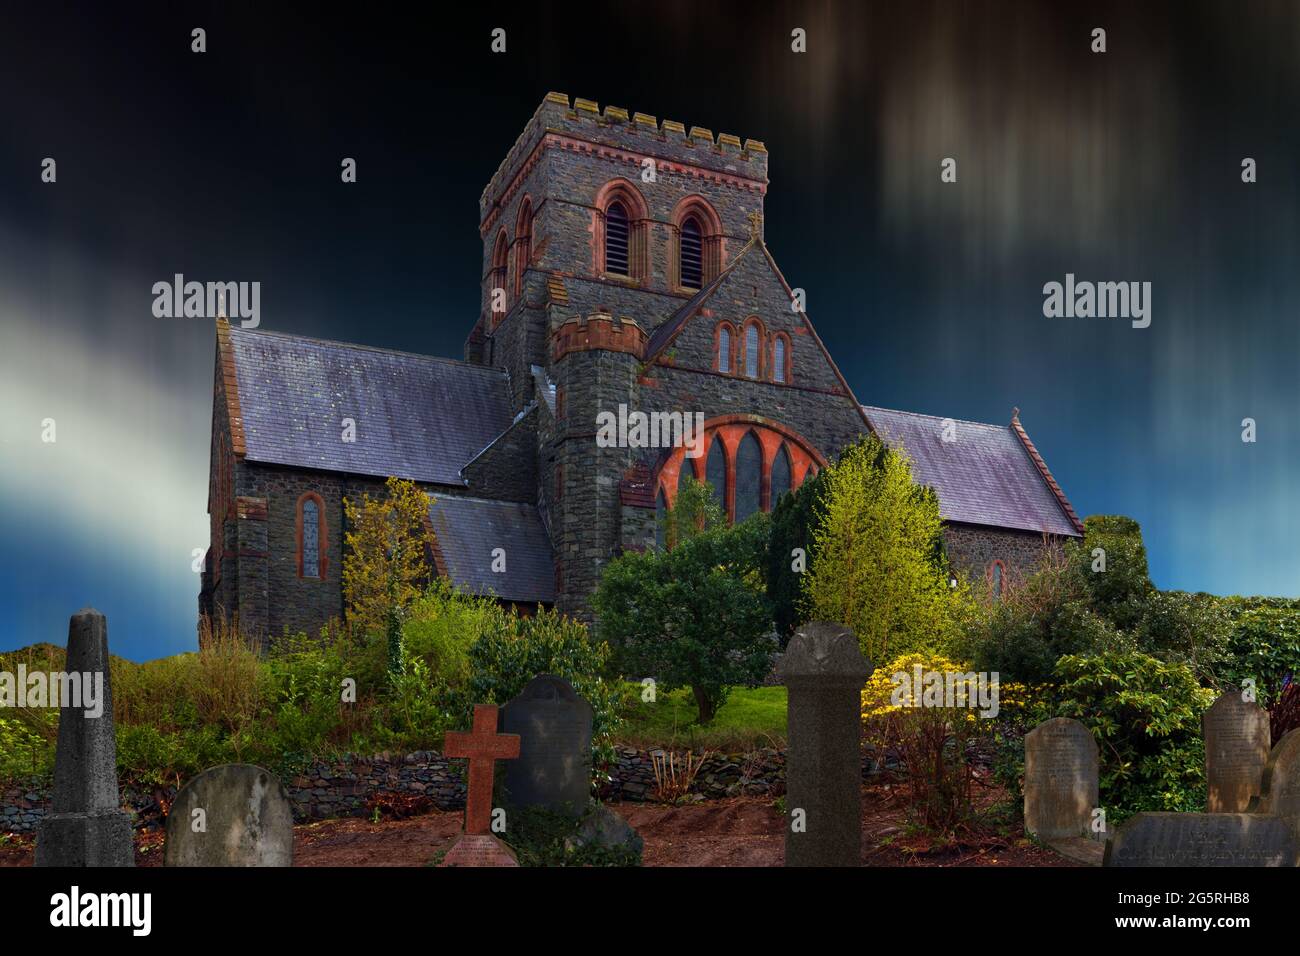 Diese Darstellung einer finsteren Kirche basiert auf der St. Padarn's Church in Llanberis, Nordwales, die 1885 erbaut wurde. Stockfoto